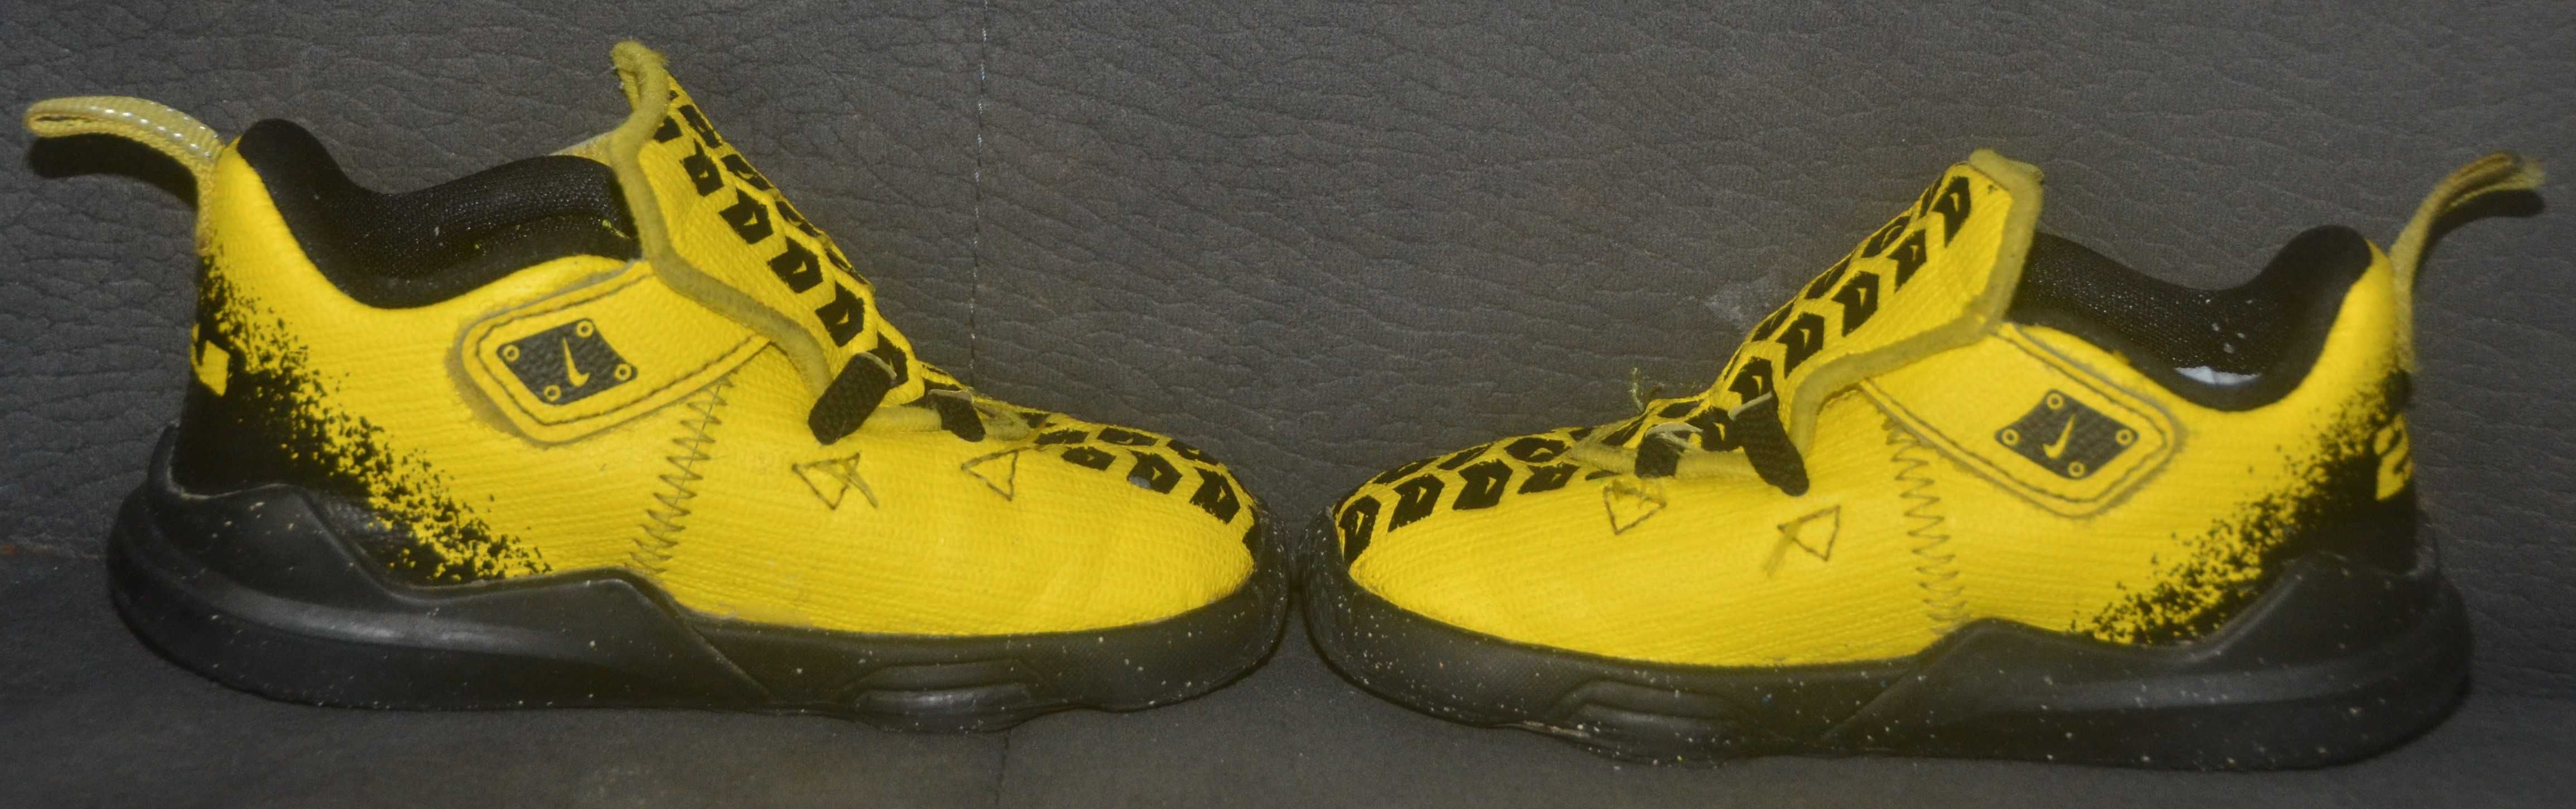 Żółto-czarne buciki Nike rozm.22